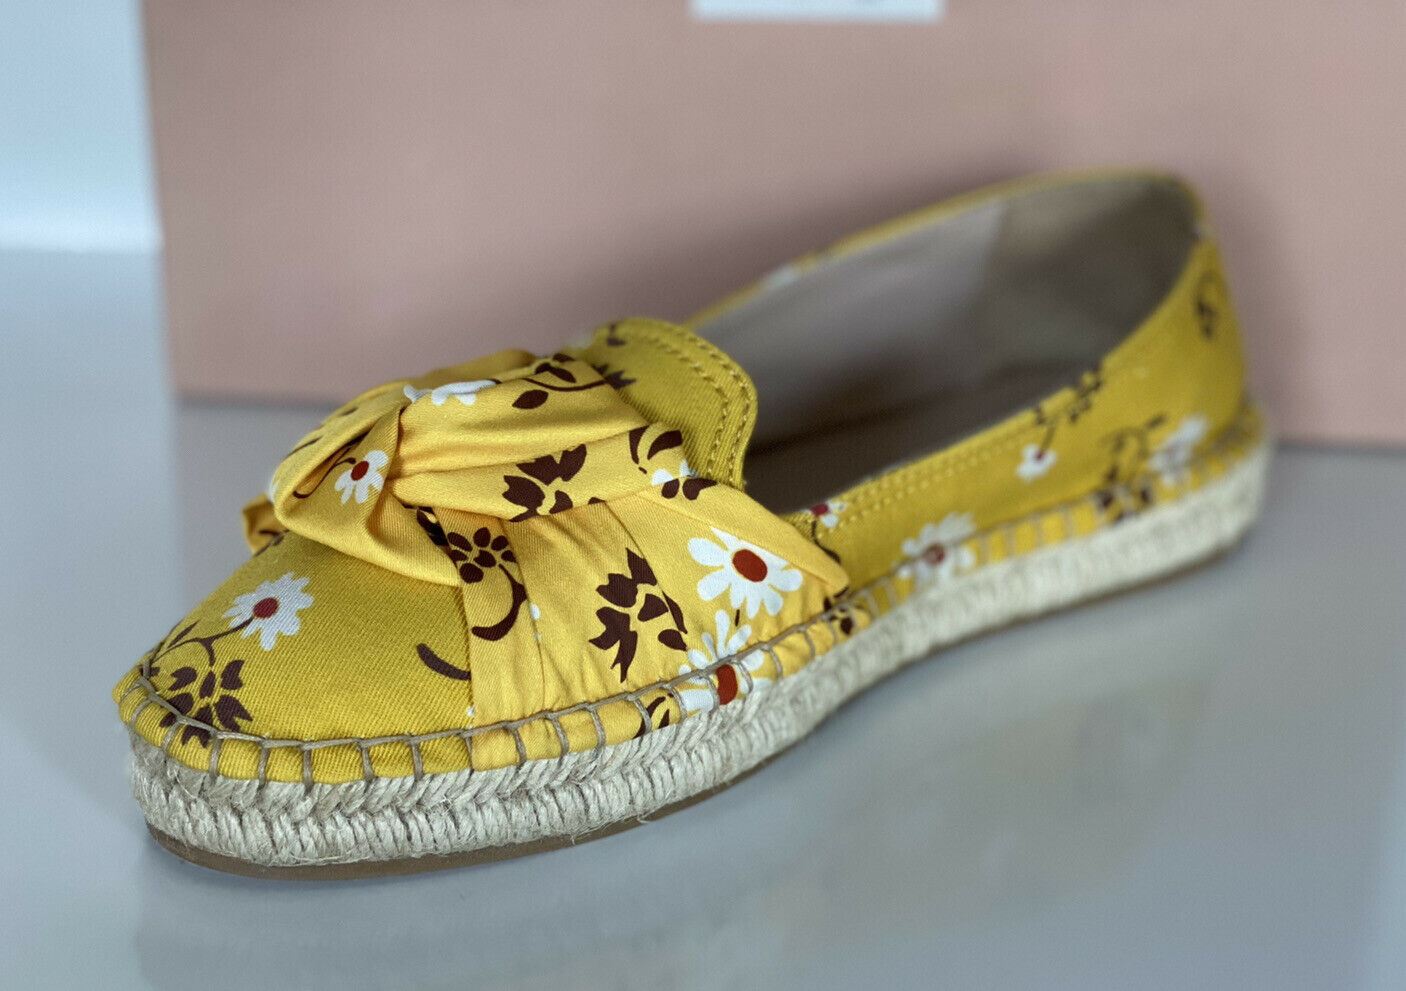 NIB MIU MIU Damen-Espadrille-Sandale mit gelben Blumen, 9 US 5S037D, hergestellt in Italien 